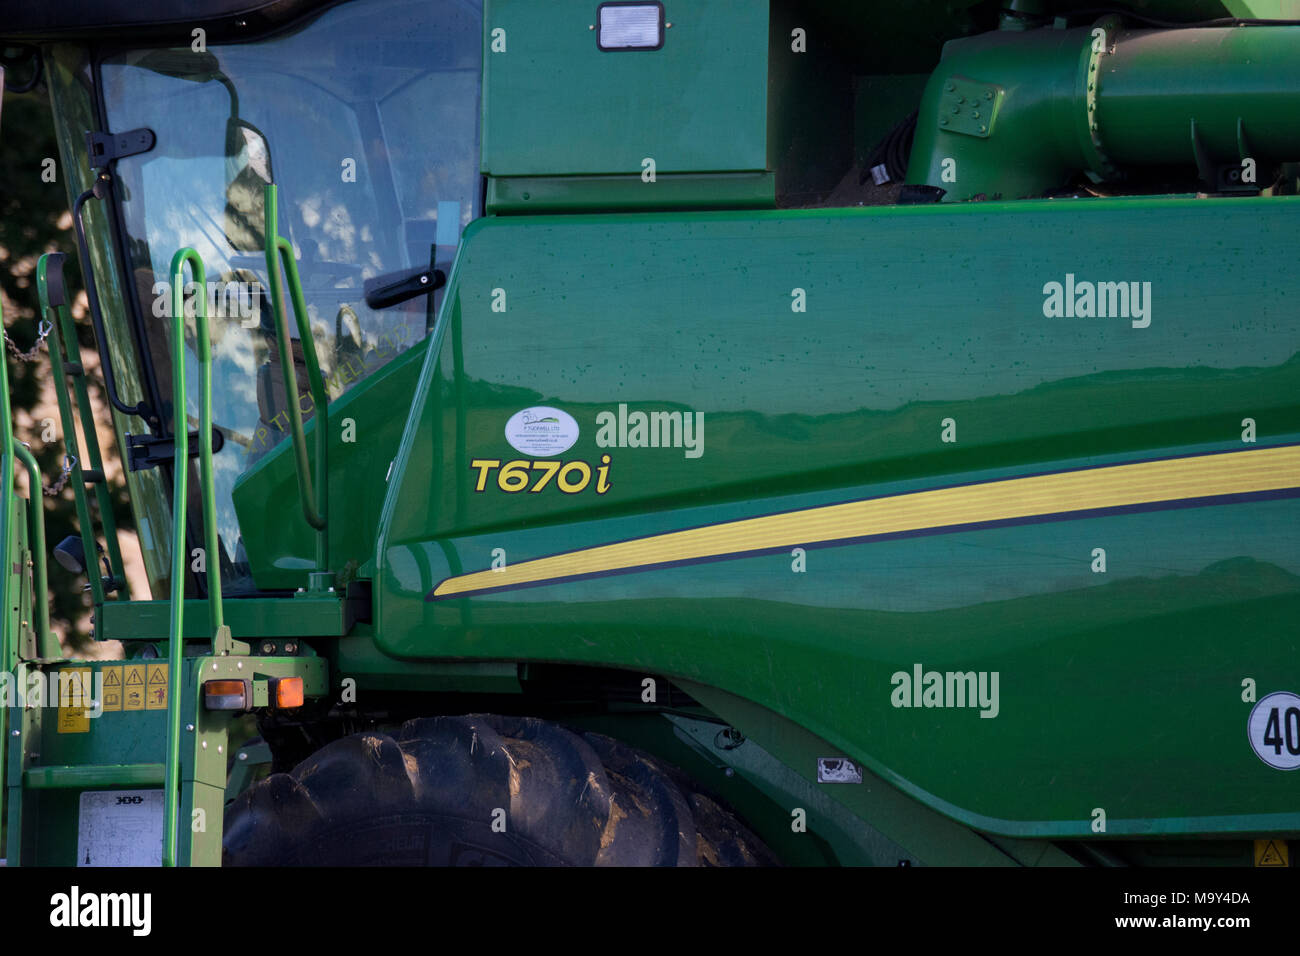 John Deere T670i combine harvester Banque D'Images